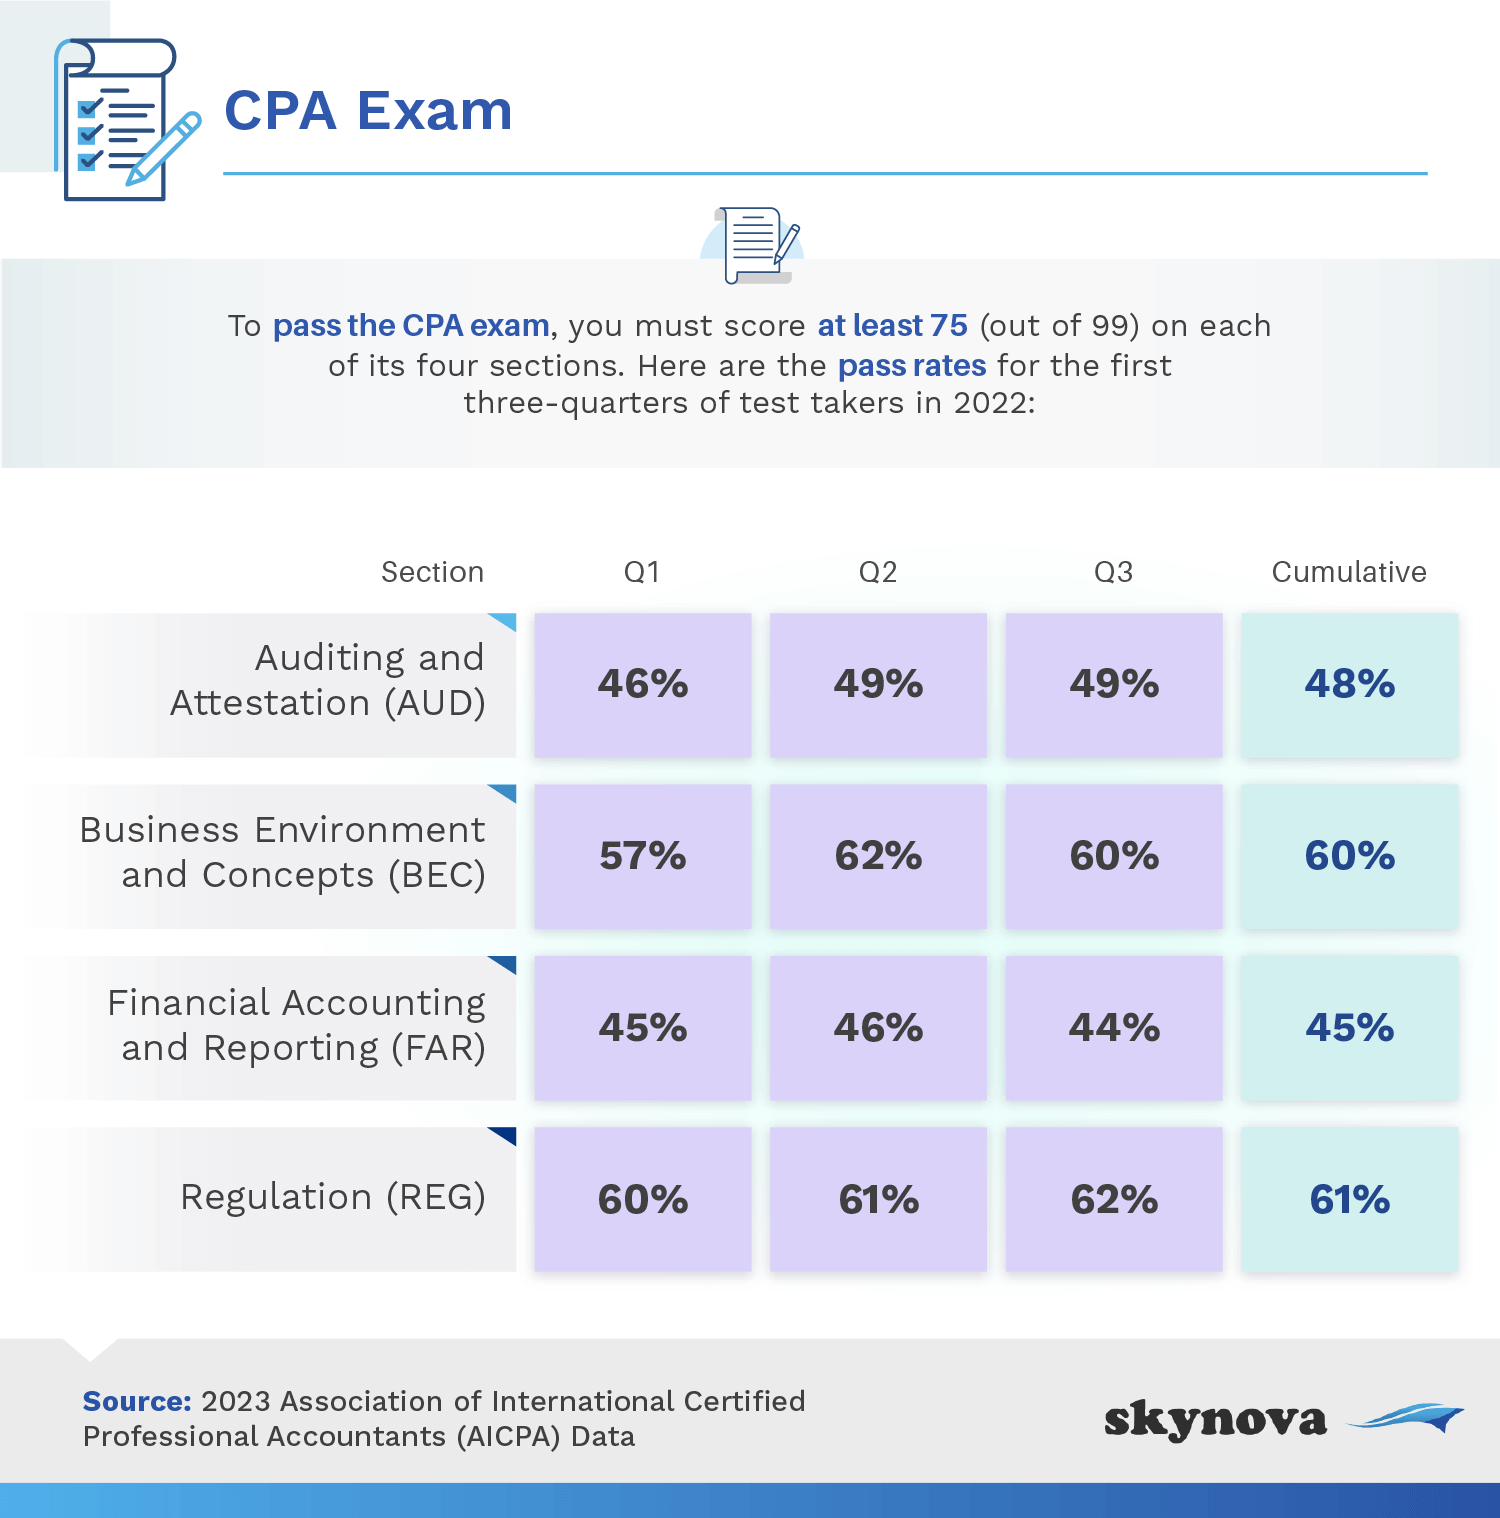 Data: Percent who pass CPA exam